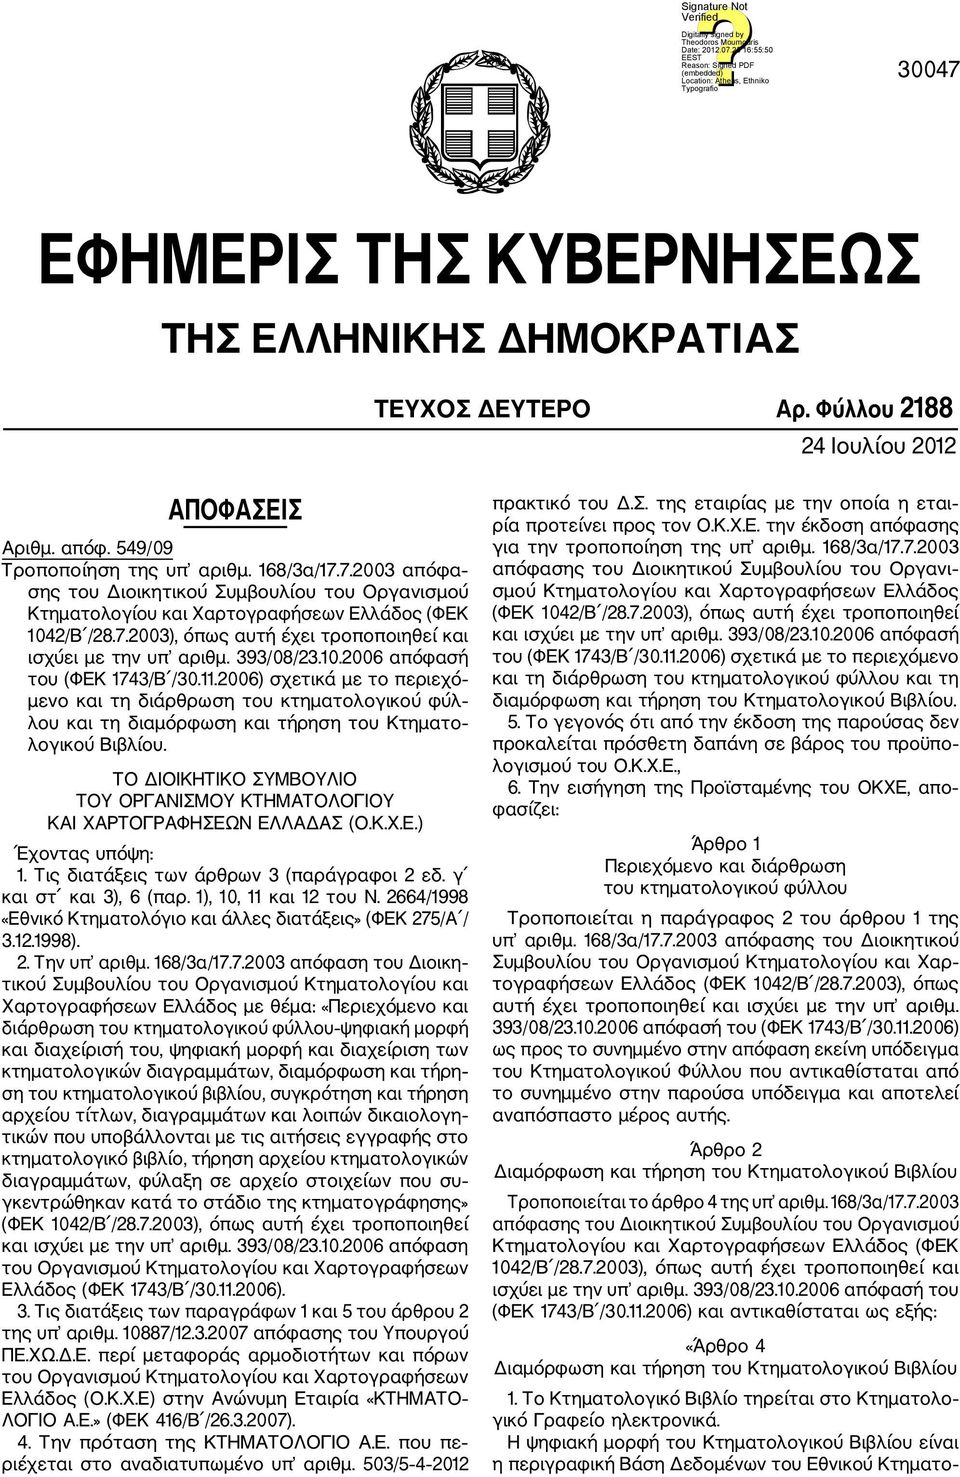 2006) σχετικά με το περιεχό μενο και τη διάρθρωση του κτηματολογικού φύλ λου και τη διαμόρφωση και τήρηση του Κτηματο λογικού Βιβλίου.